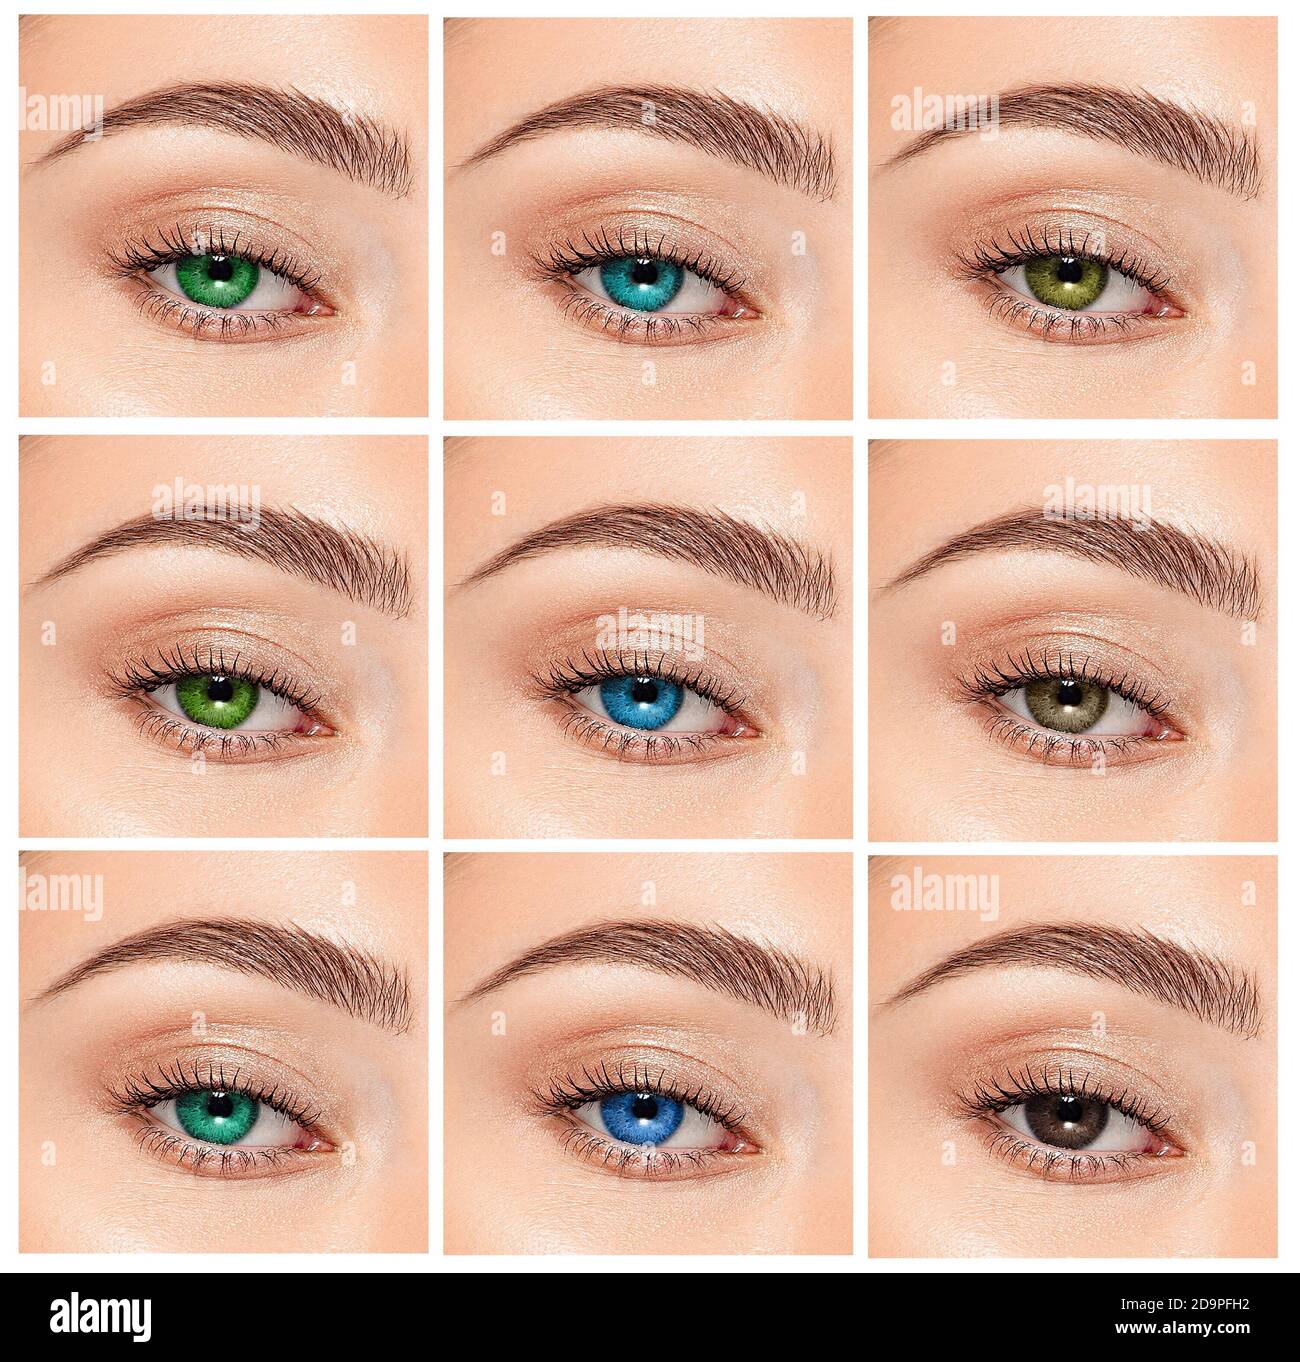 Nahaufnahme, Collage von Augen mit verschiedenen Farben, grün, grau und blau Farbton auf Farbe Kontaktlinsen auf dem menschlichen Auge Stockfoto